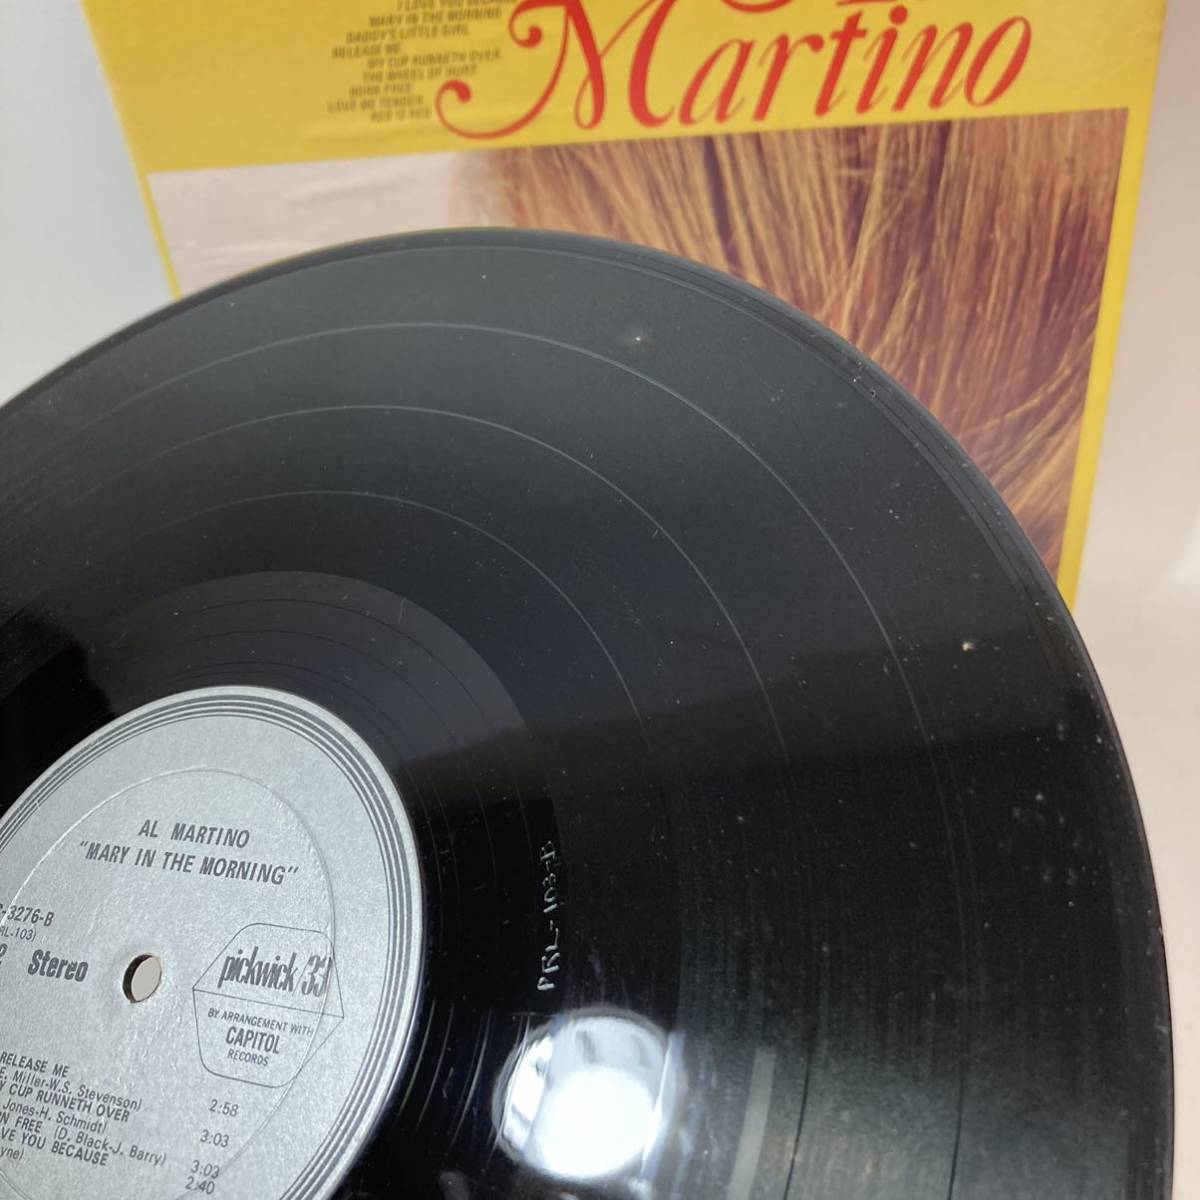 AL MARTINO アル マルティーノ MARY IN THE MORNING SPC-3276 LP レコード_画像5